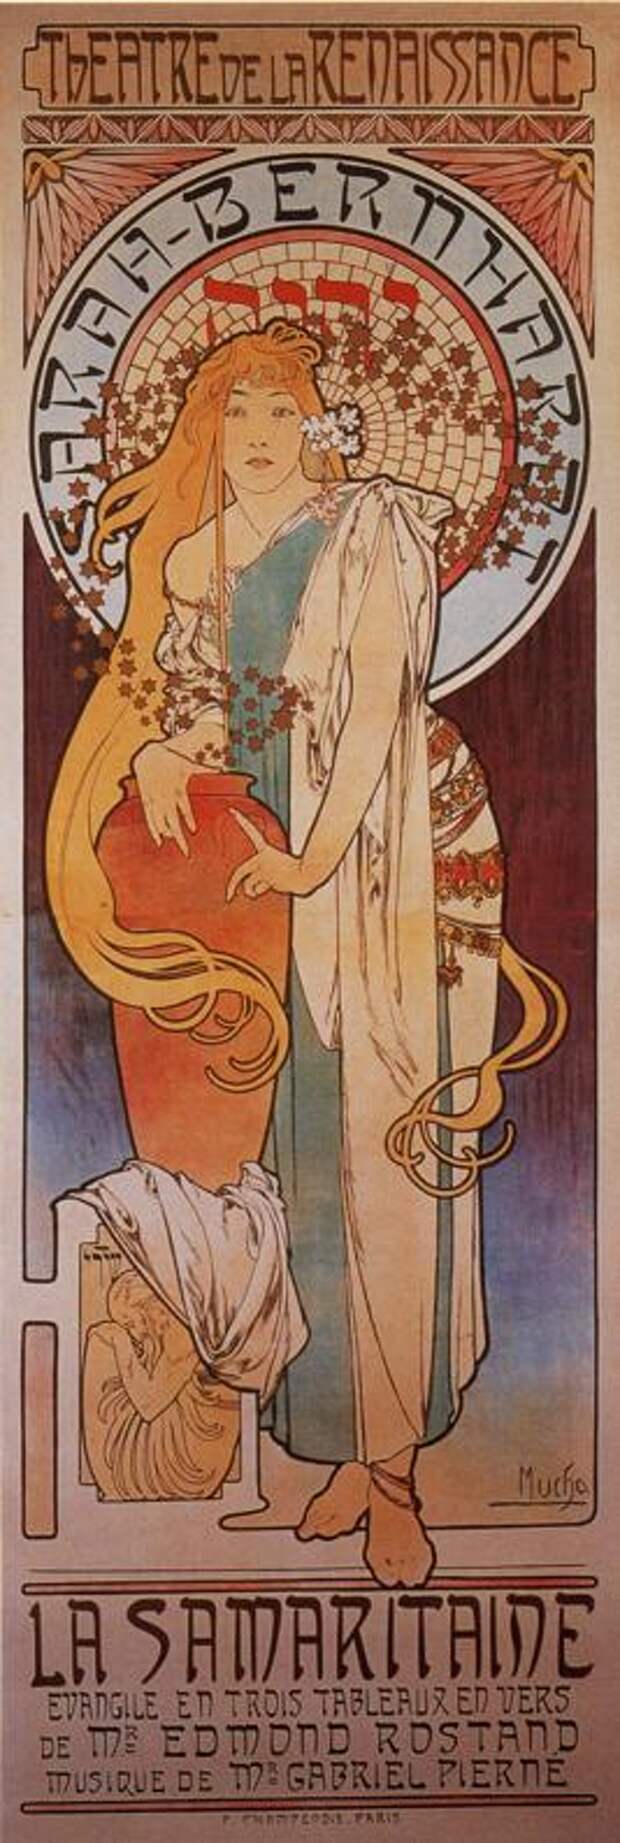 Самаритянка. Рекламный плакат для Сары Бернар. 1897